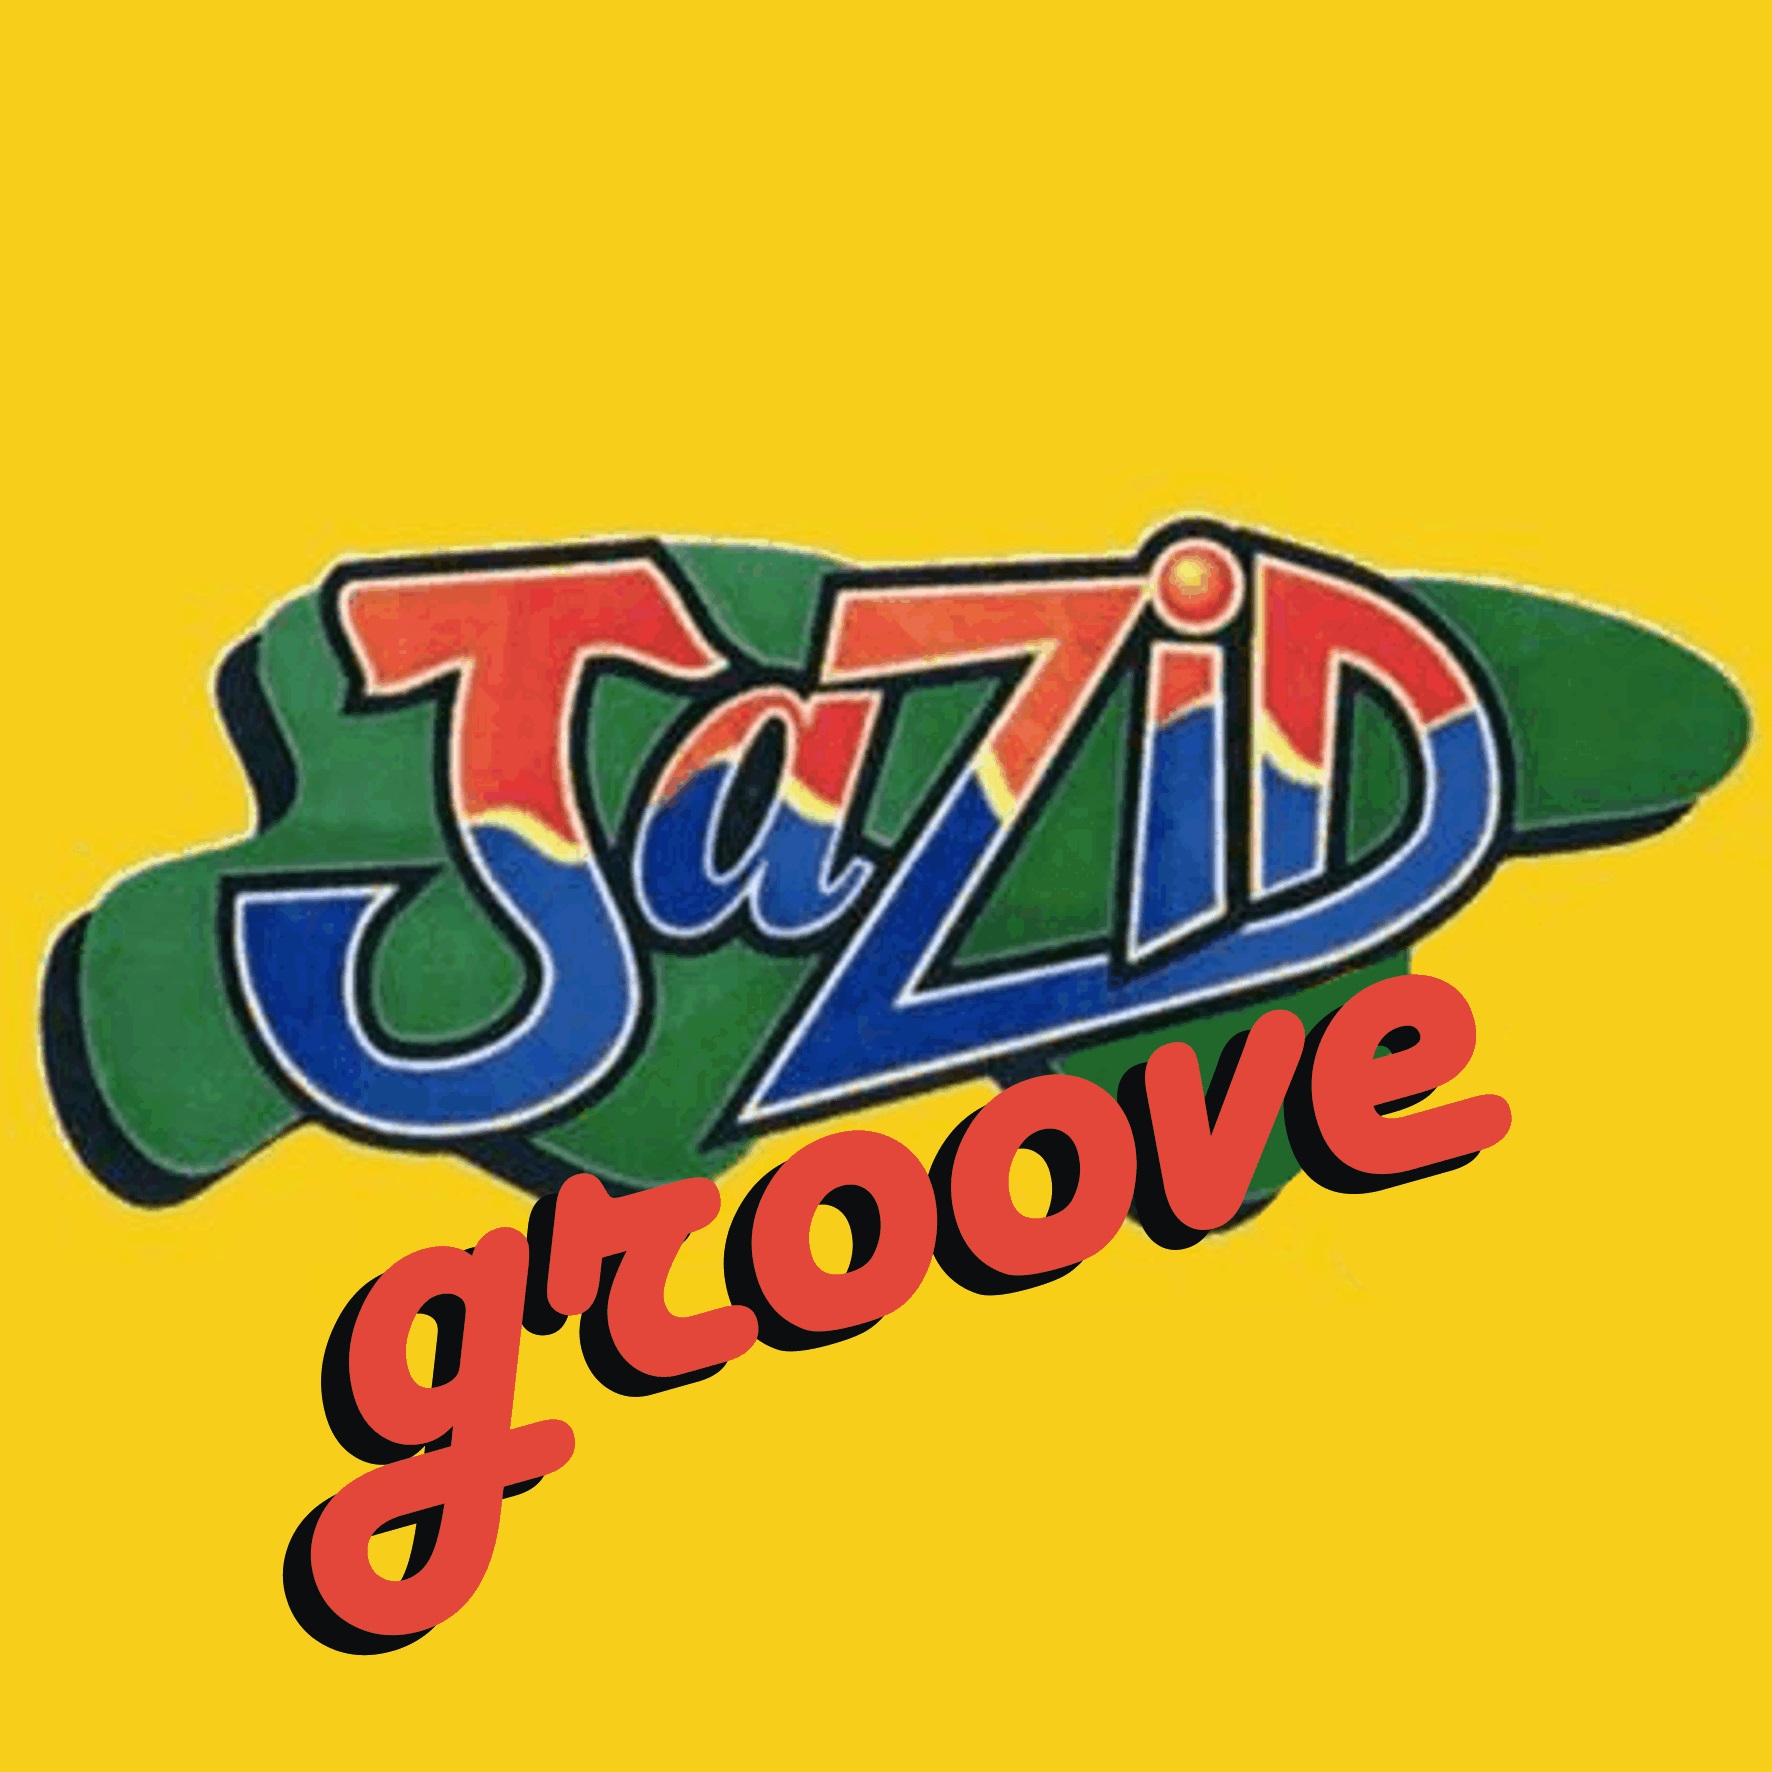 Jazid Groove 13